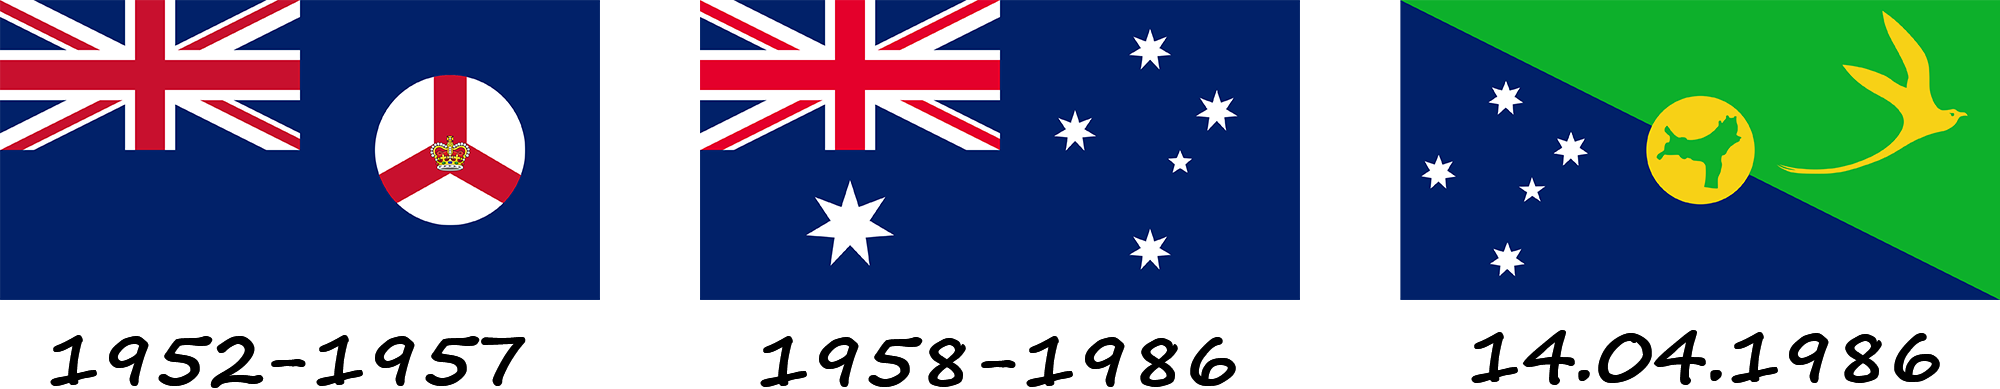 History of the Christmas Island flag